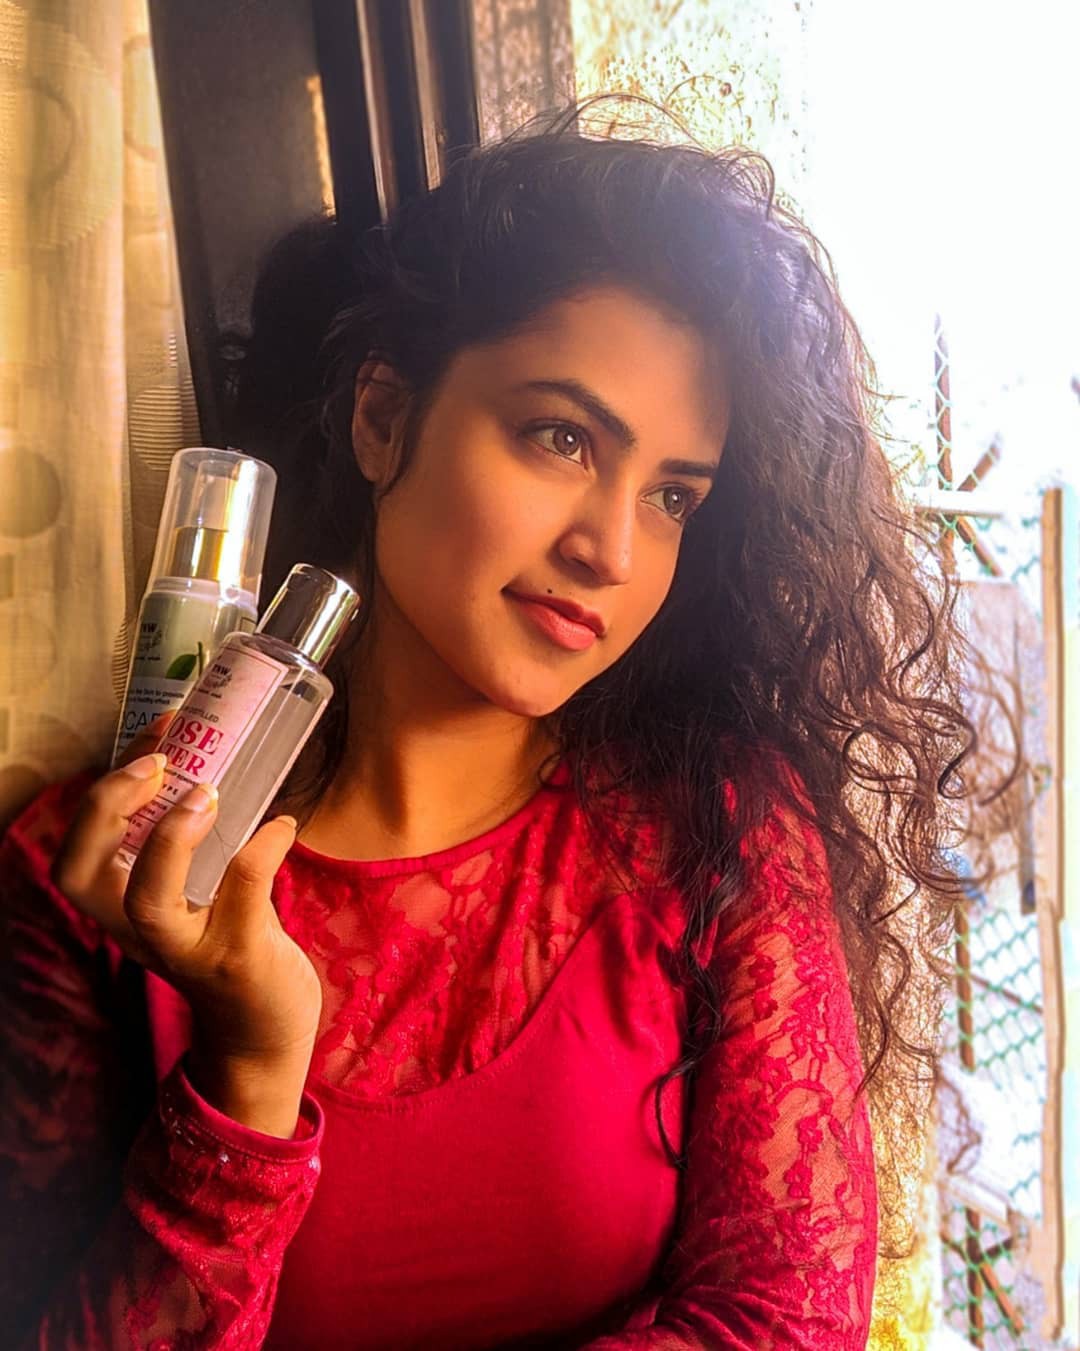 Farhina Parvez Jarimari Instagram, El lavado natural, Farhina Parvez Jarimari: Ideas para teñir el cabello,  Chicas hermosas,  Sesión de fotos,  Farhina Parvez Jarimari,  farinha parvez  